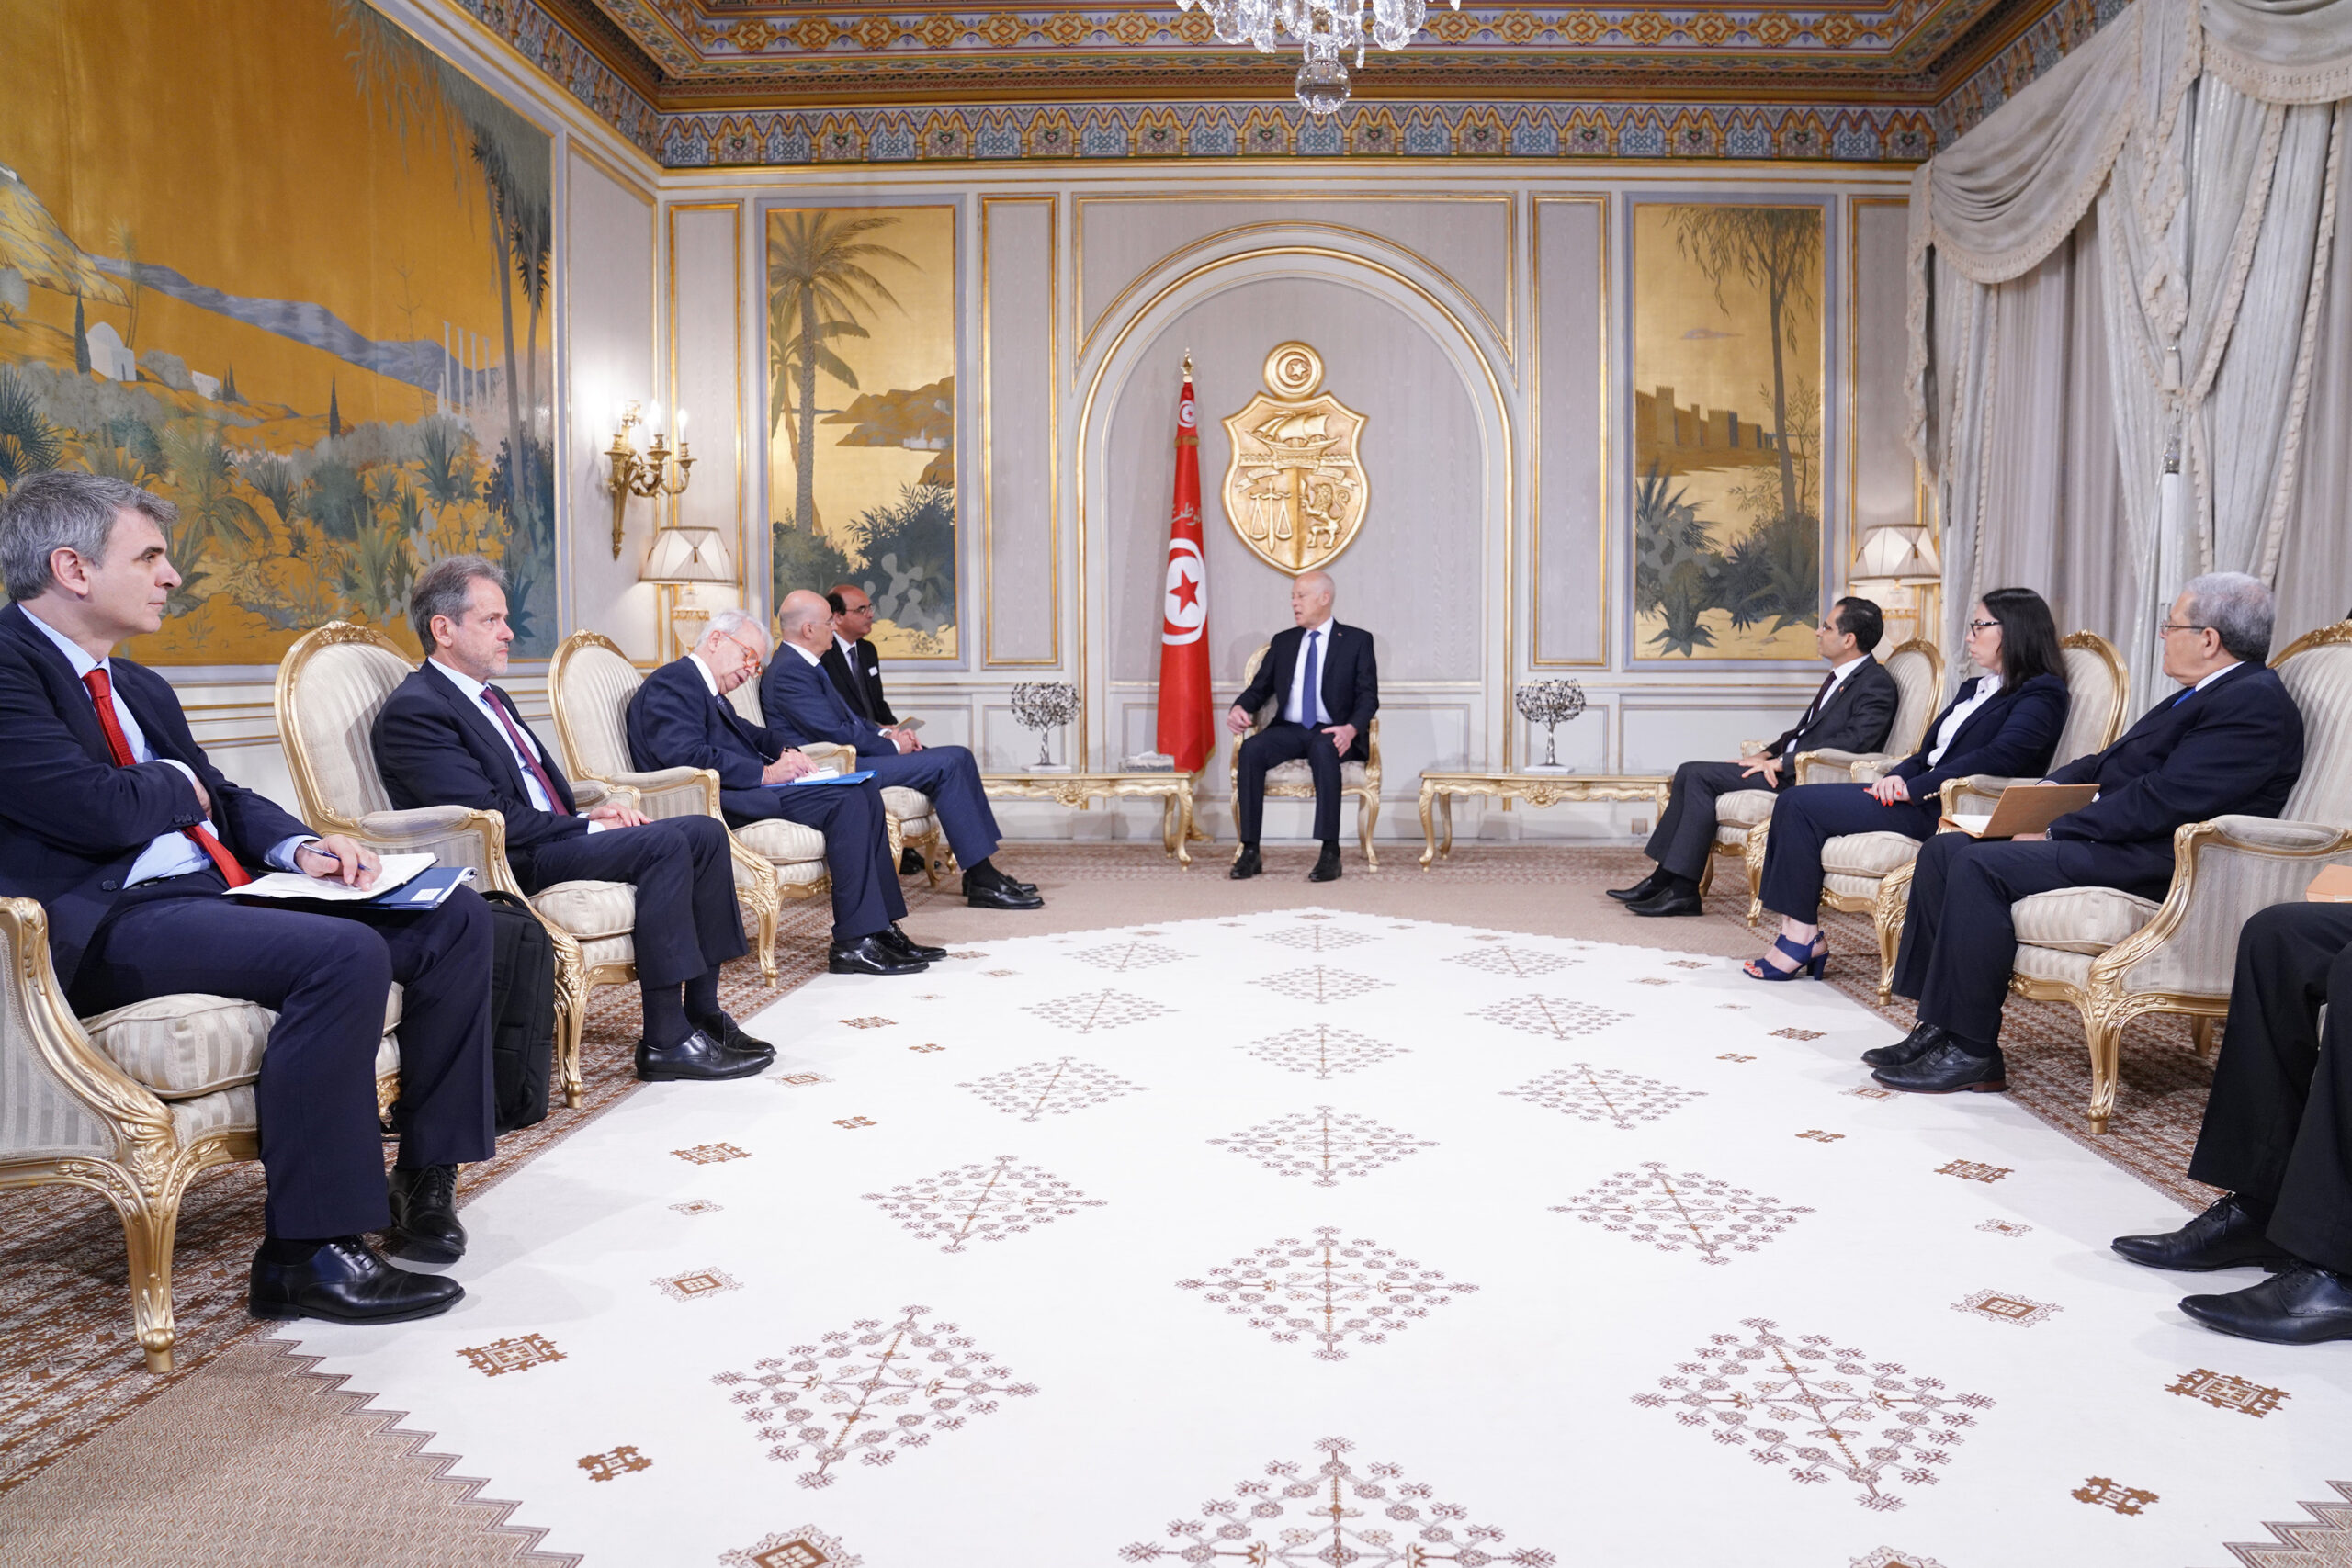 Επίσκεψη Υπουργού Εξωτερικών, Νίκου Δένδια, στην Τυνησία. Συνάντηση με τον Πρόεδρο της χώρας, Kais Saied  (Τύνιδα, 29.06.2020)